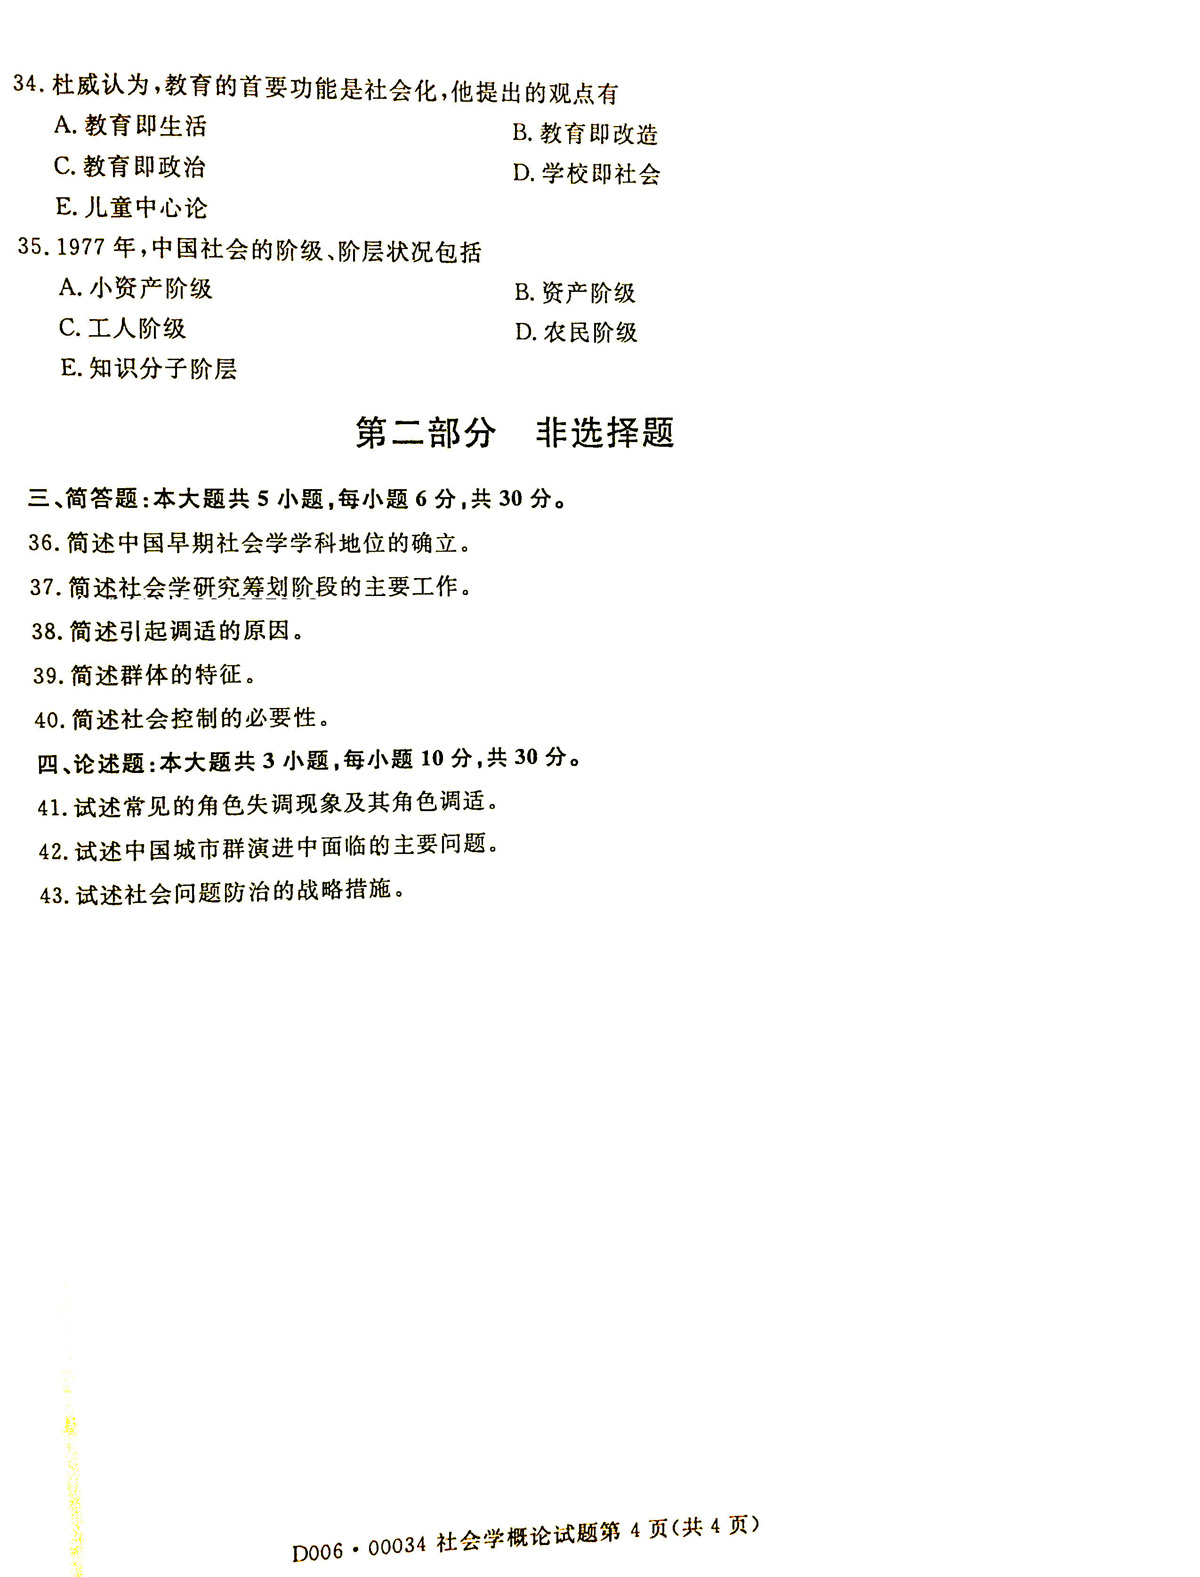 2019年04月贵州省自学考试《社会学概论》00034试题和答案